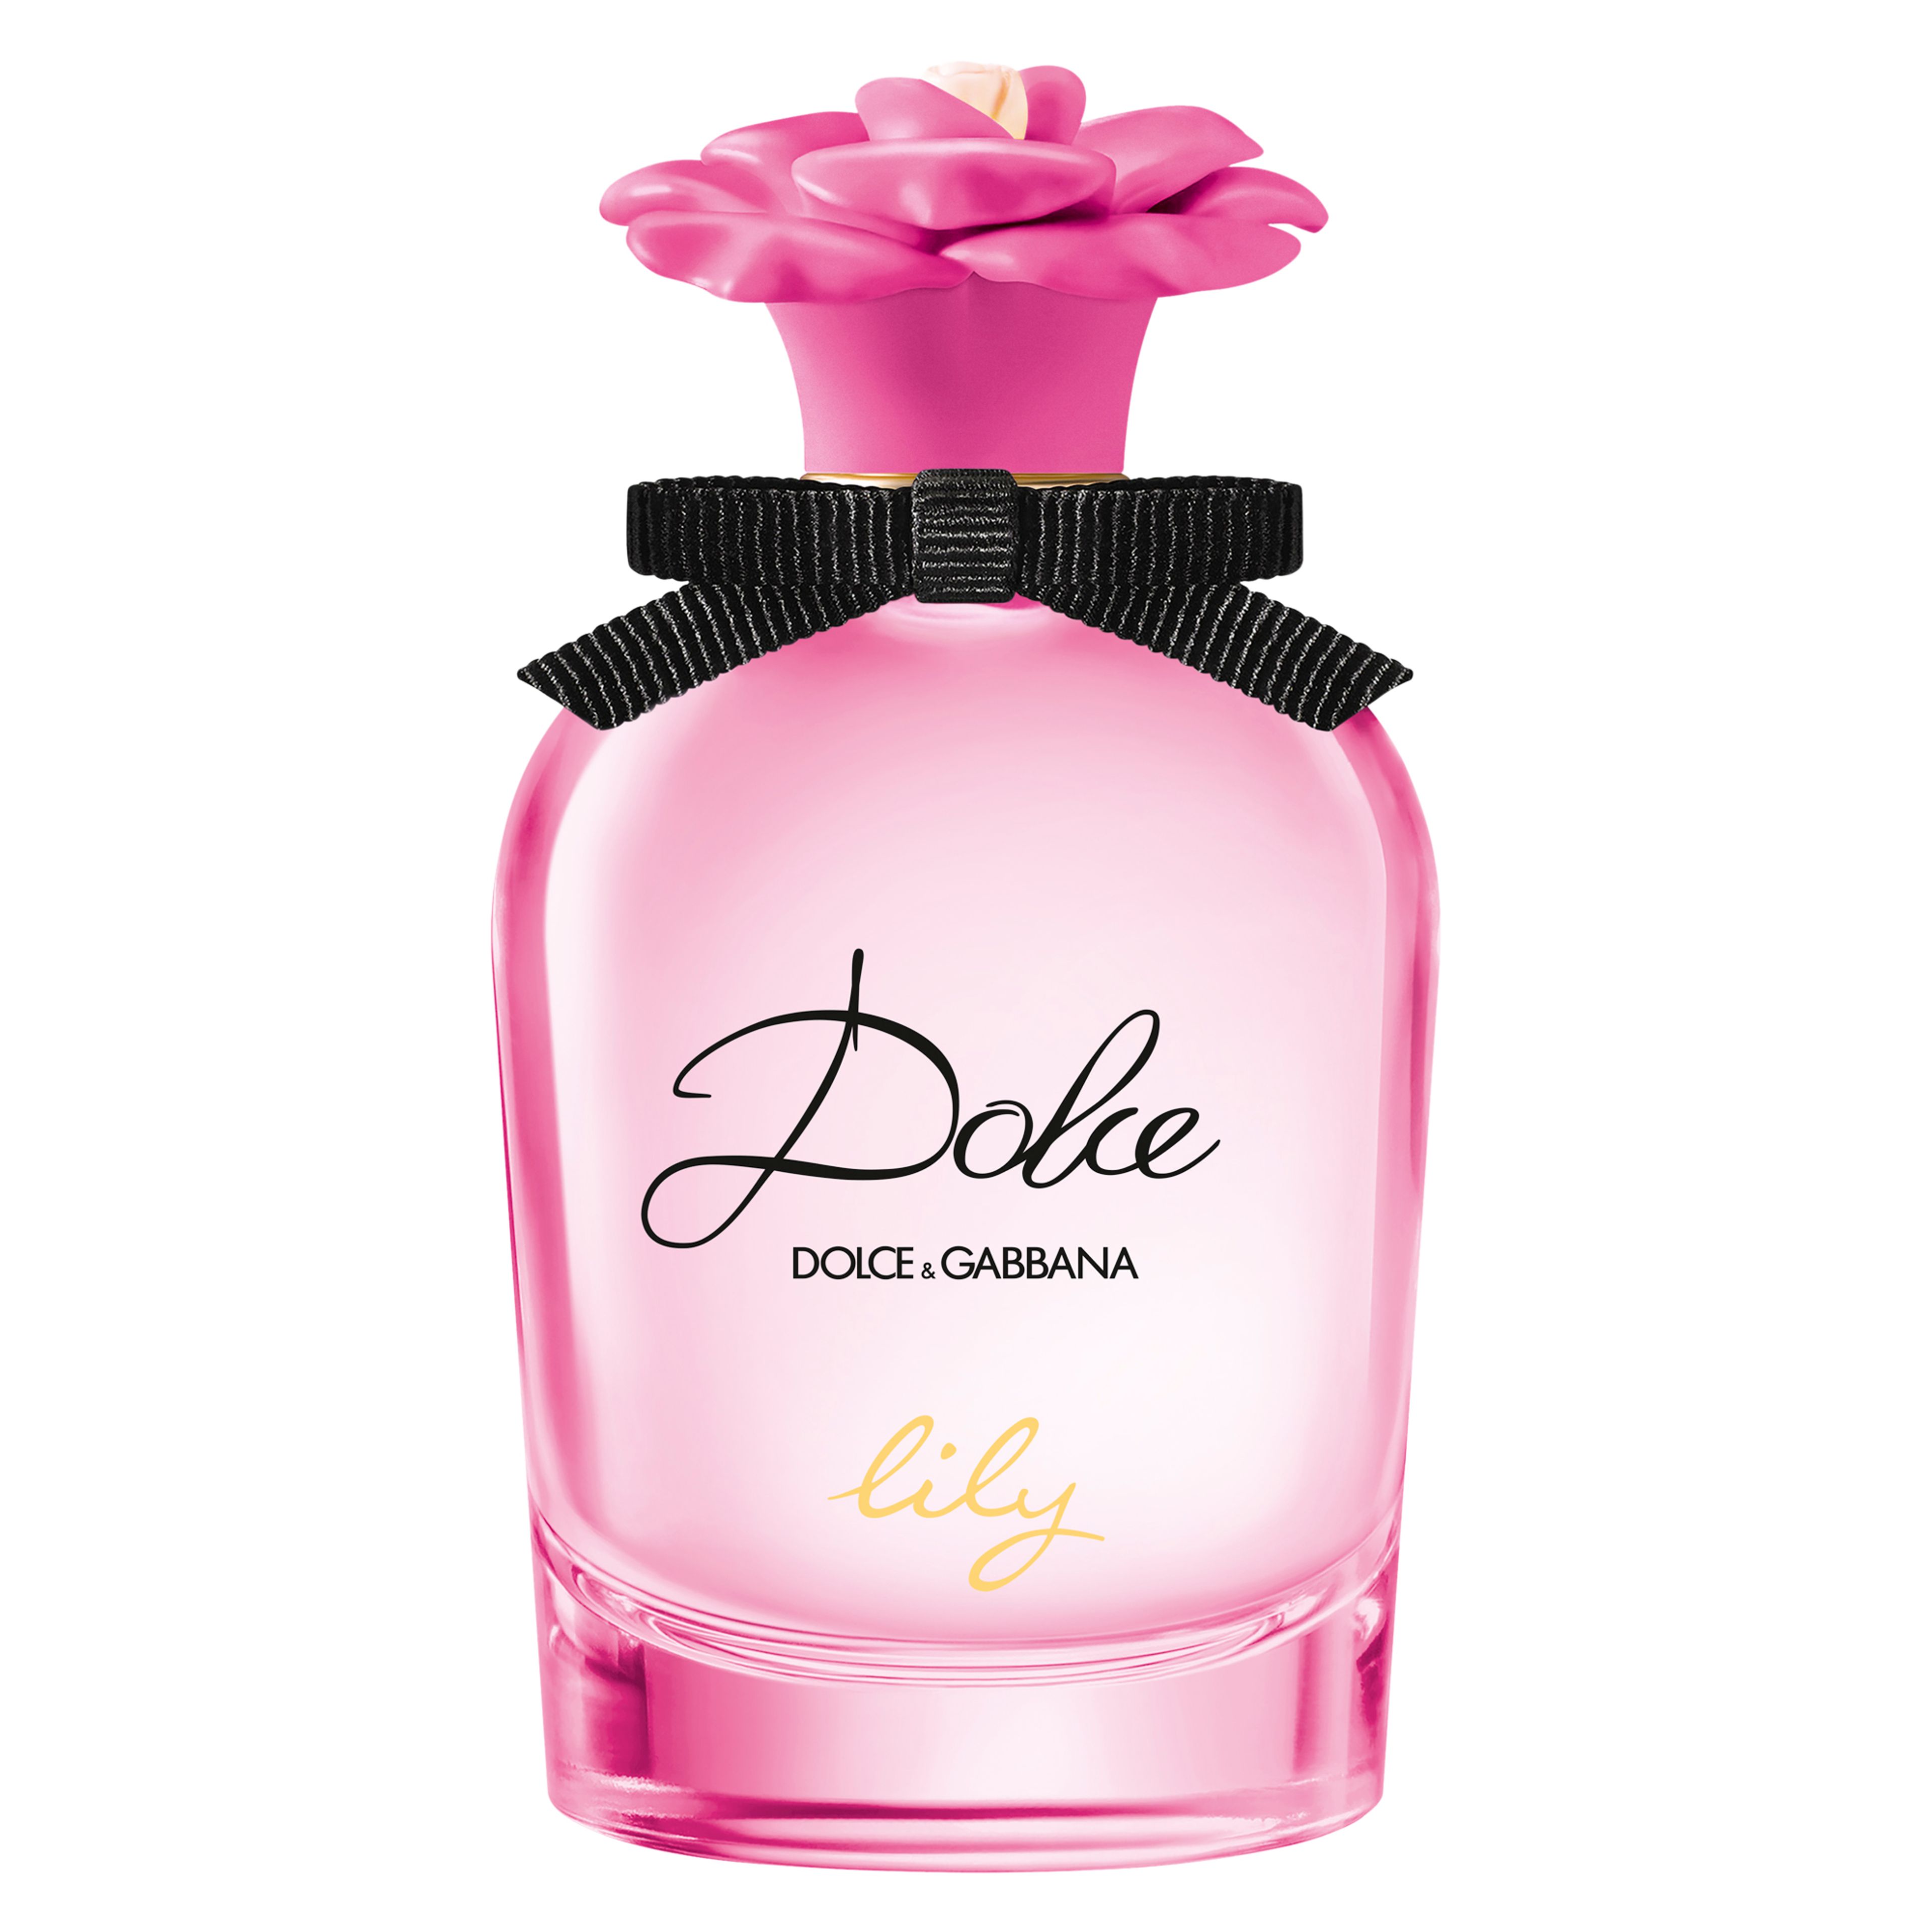 Dolce & Gabbana Dolce Lily Eau De Toilette 1